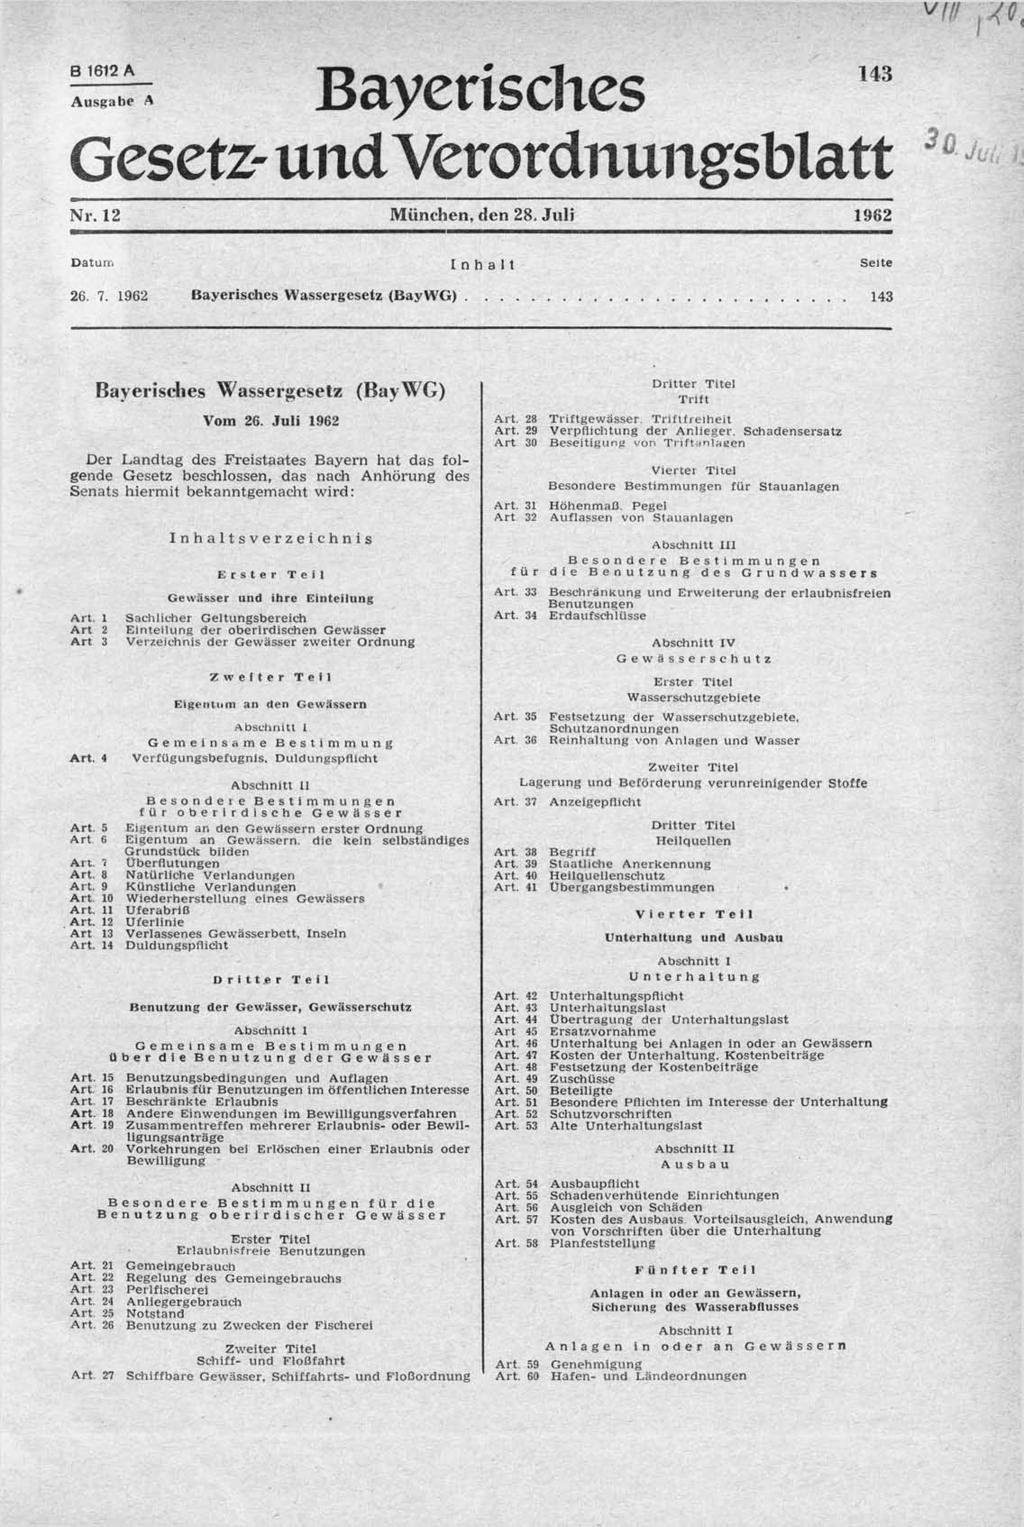 B 1612 A 143 Ausgabe A Bayerisches Gesetz- undverordnung* ;blatt Nr. 12 München, den 28. Juli 1962 Datum 26. 7. 1962 Inhalt Bayerisches Wassergesetz (BayWG)... Seite.